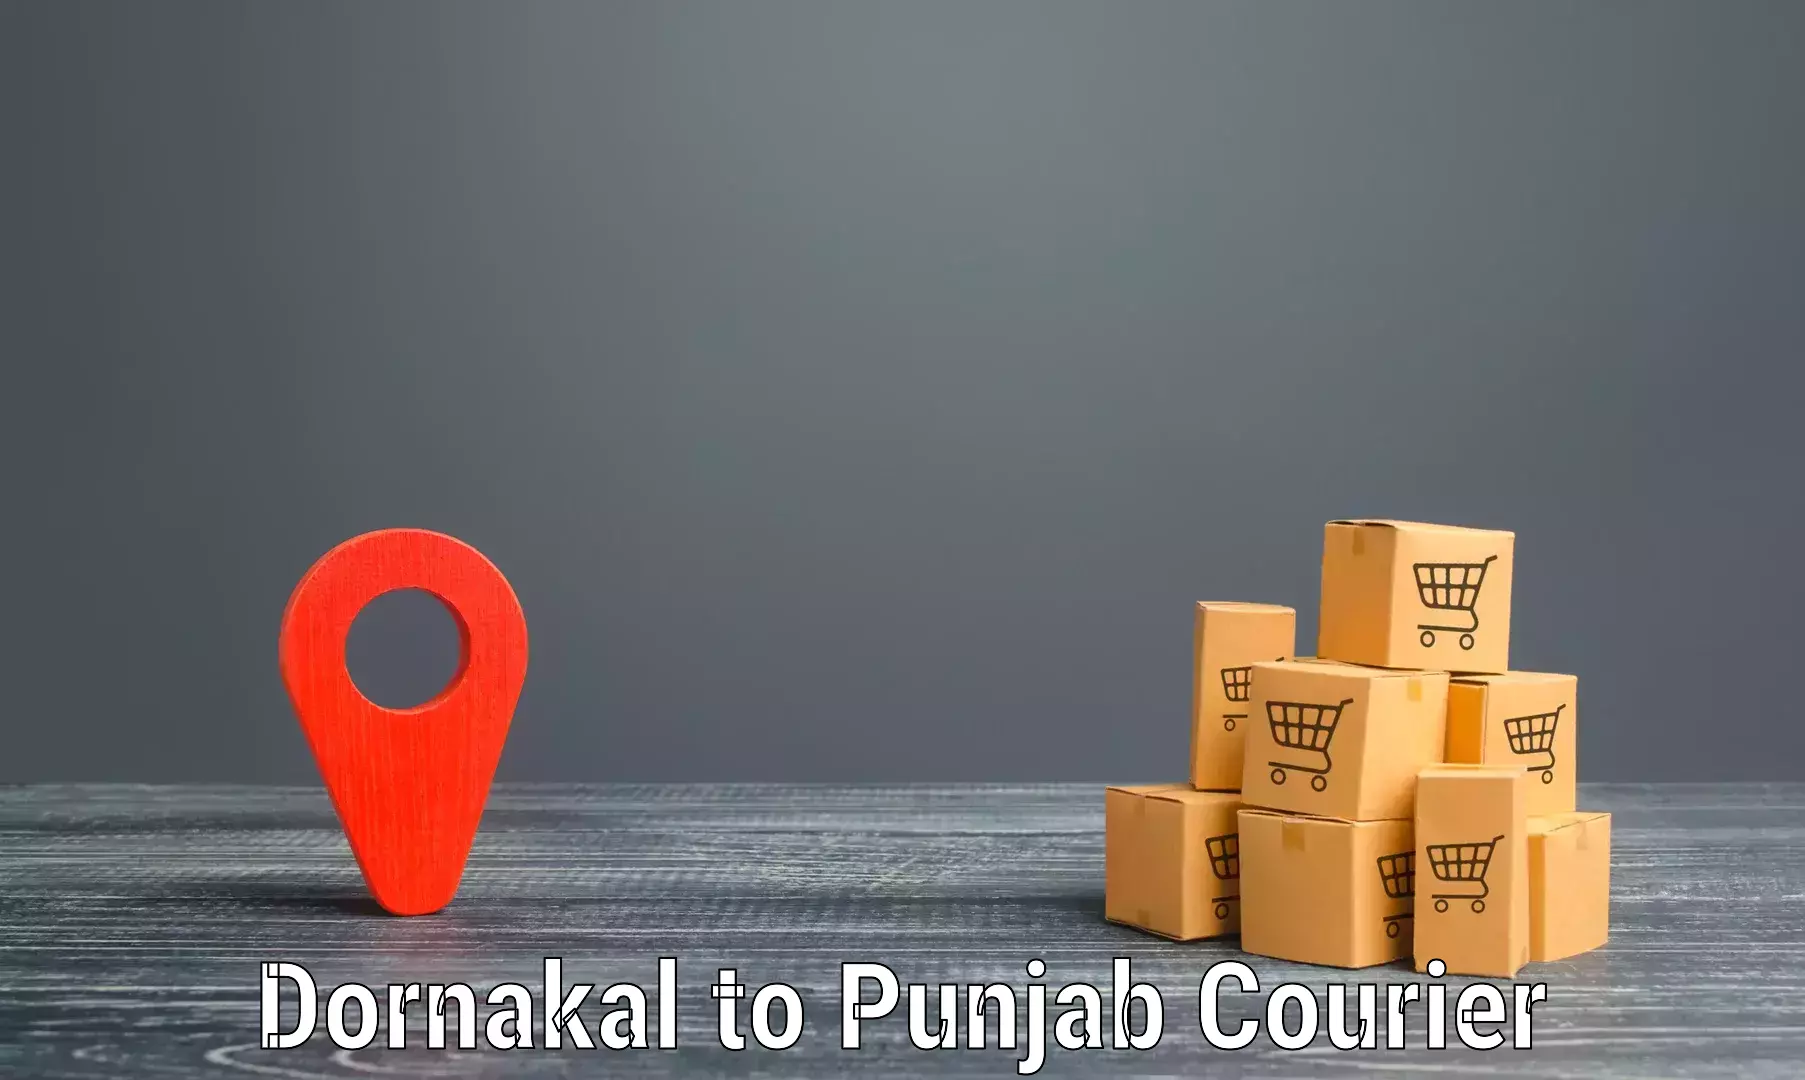 Bulk shipping discounts Dornakal to Zirakpur